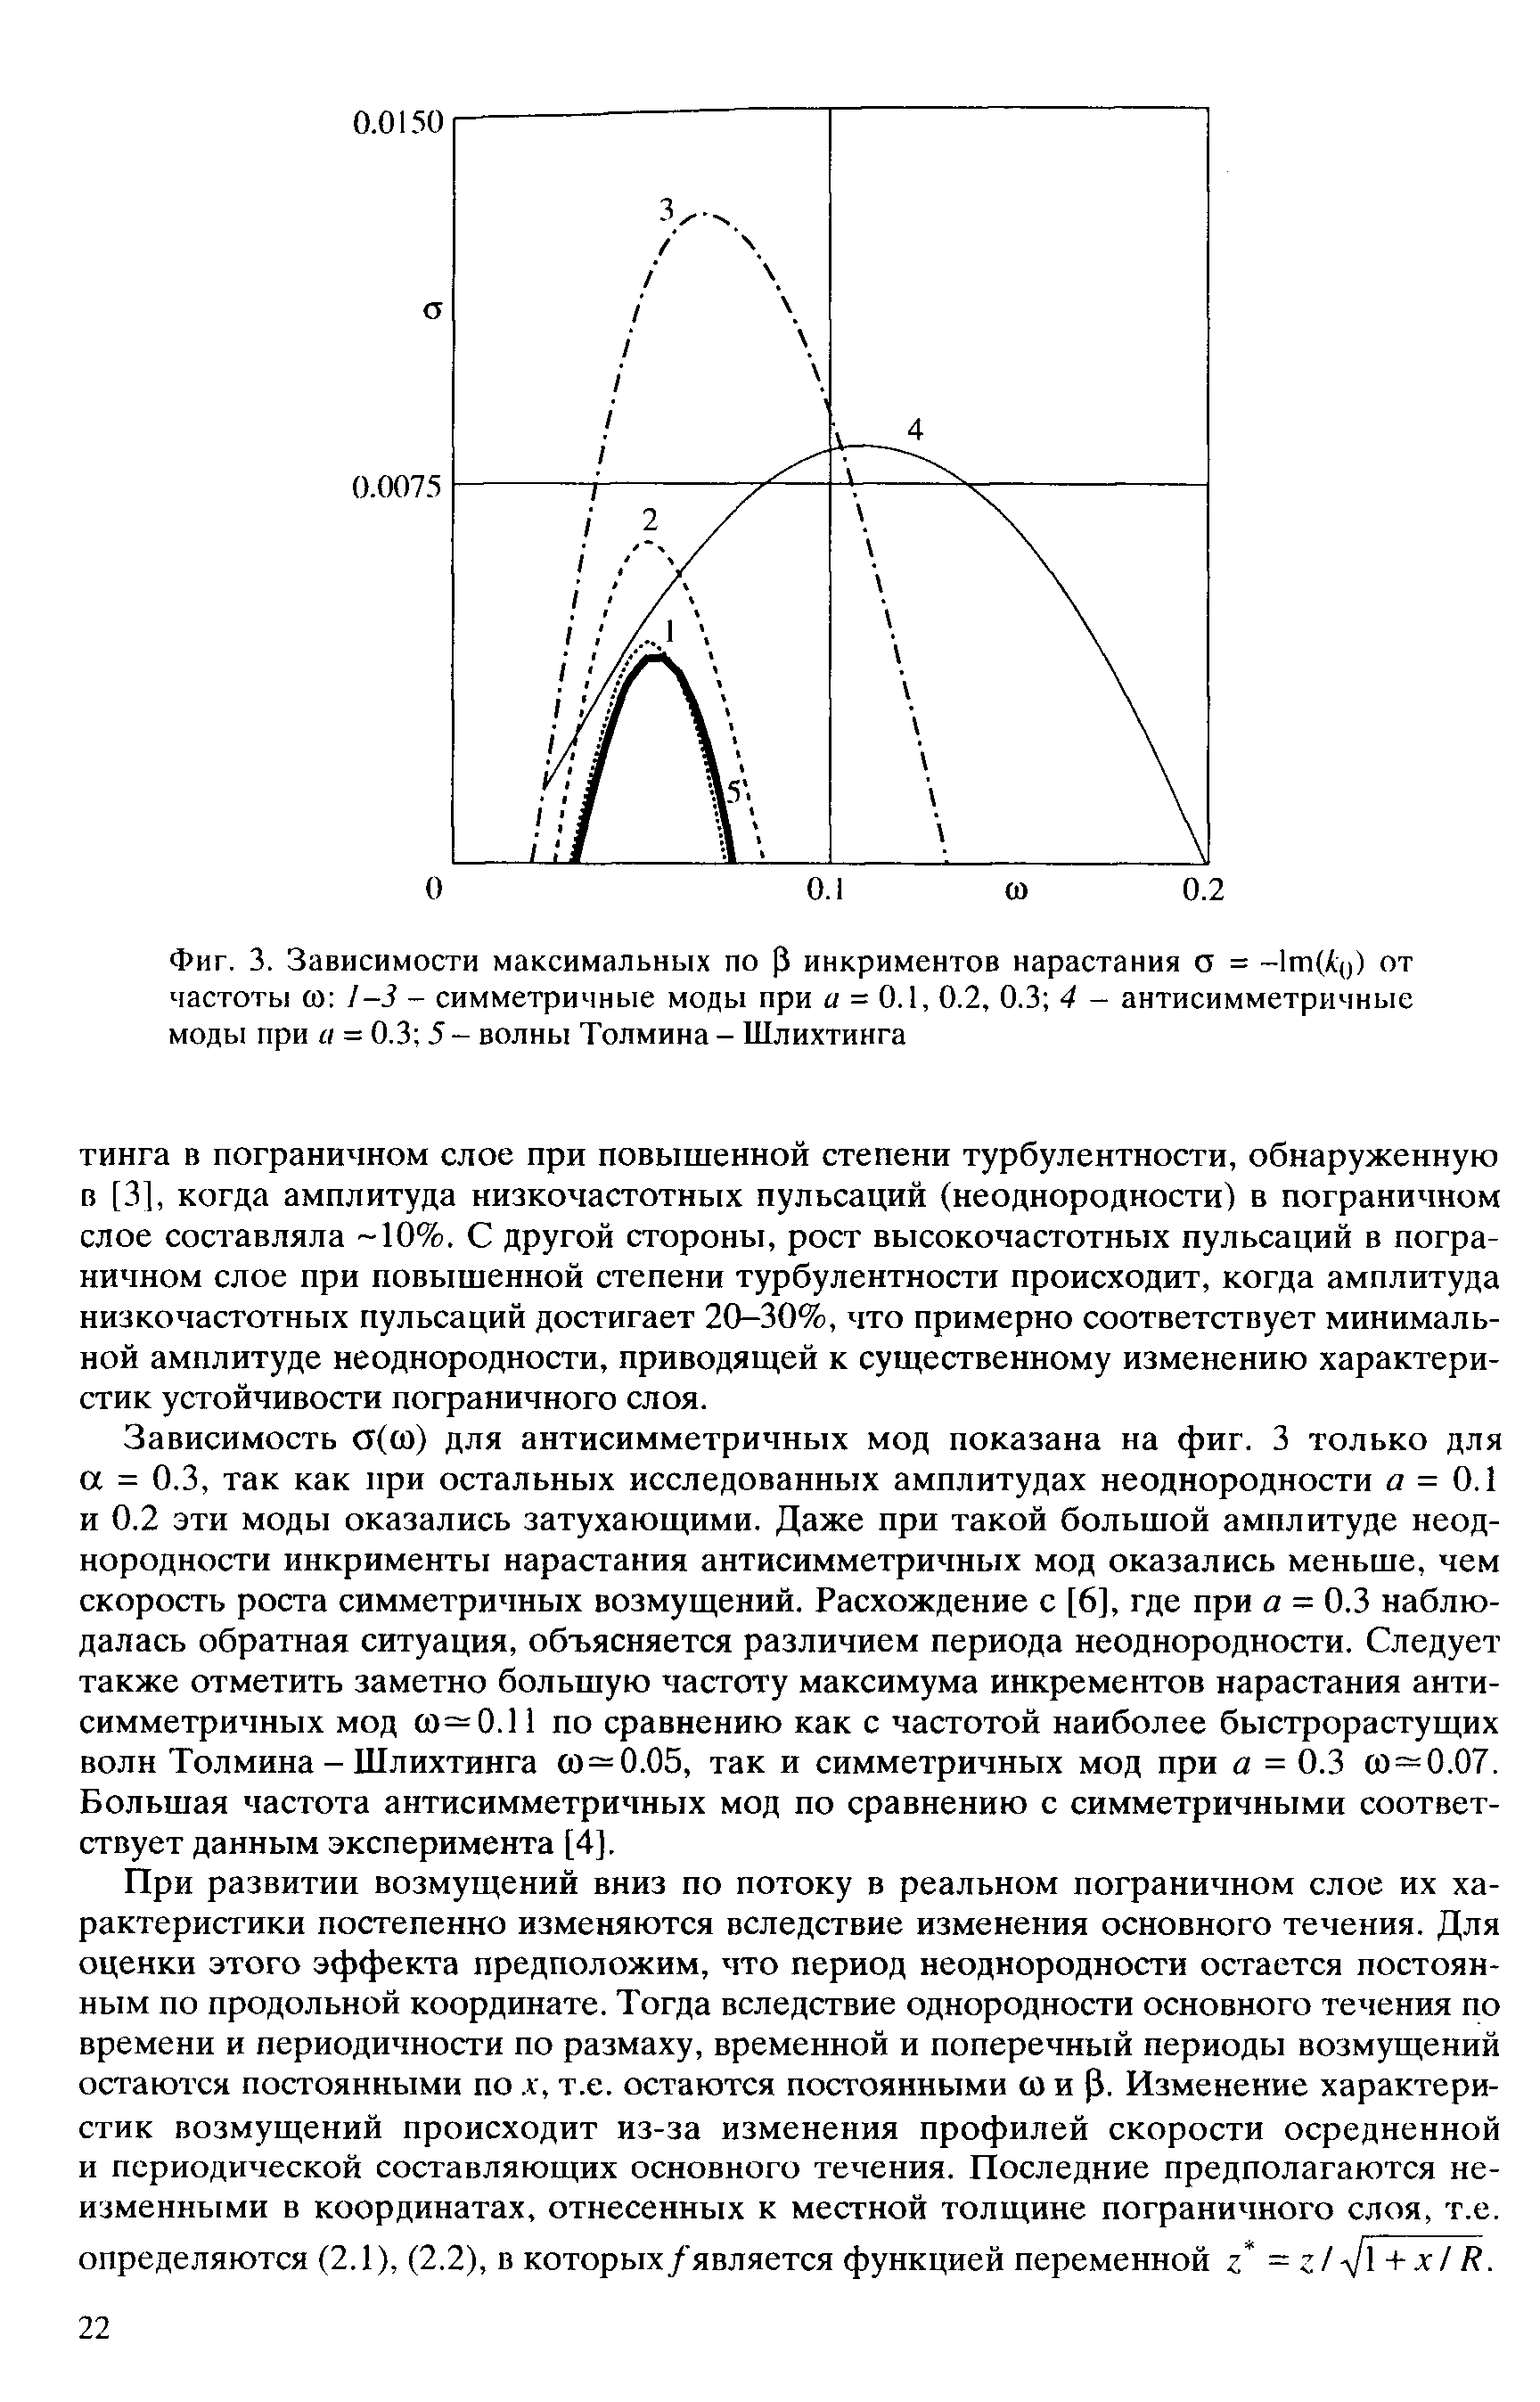 Фиг. 3. Зависимости максимальных по Р инкриментов нарастания о = -1т(Ао) от частоты со -3 - симметричные моды при = 0.1, 0.2, 0.3 4 - антисимметричные моды при а = 0.3 5 - волны Толмина - Шлихтинга
